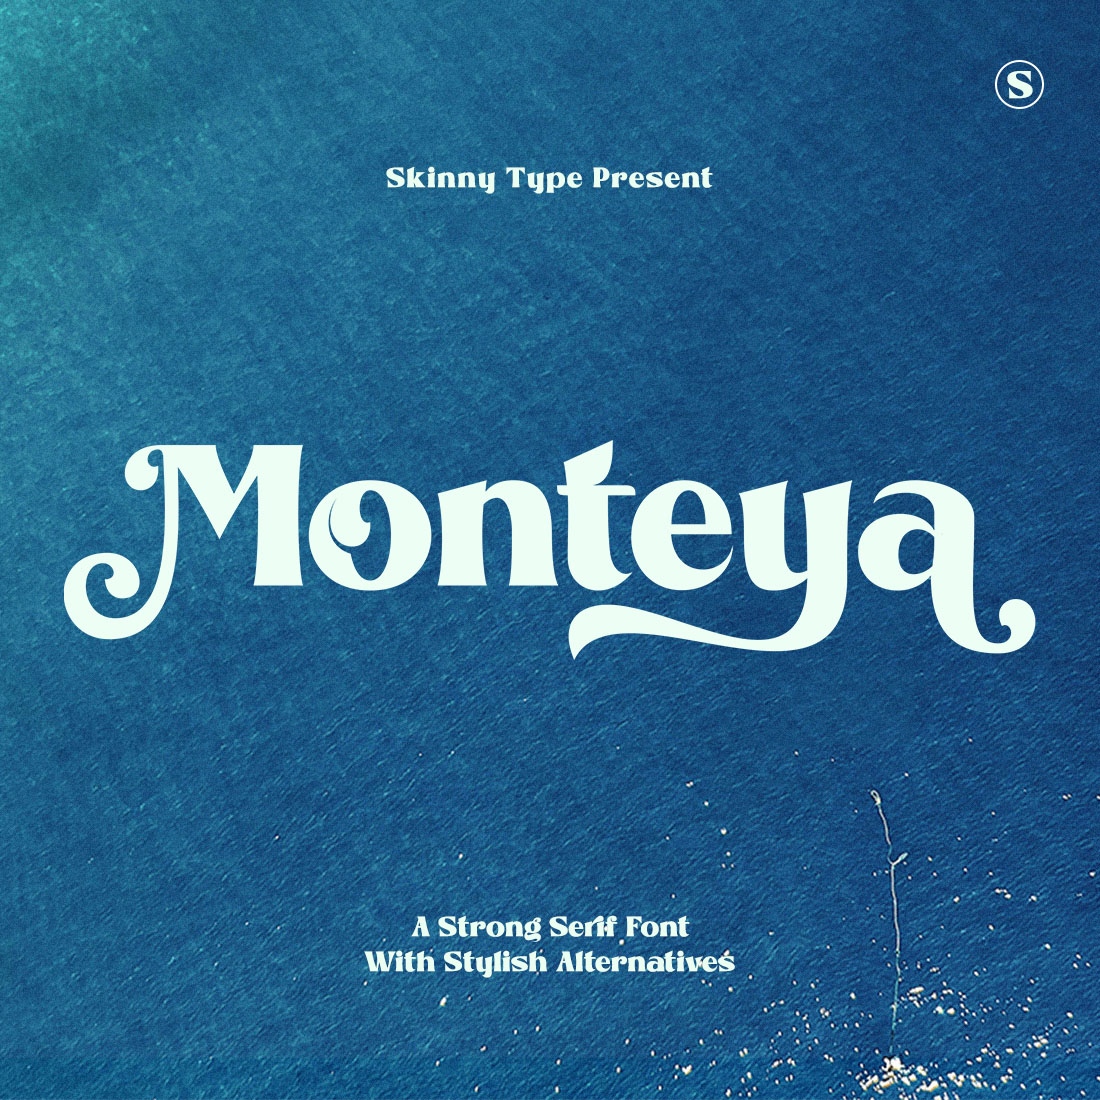 Monteya - Stylish Serif Display cover image.